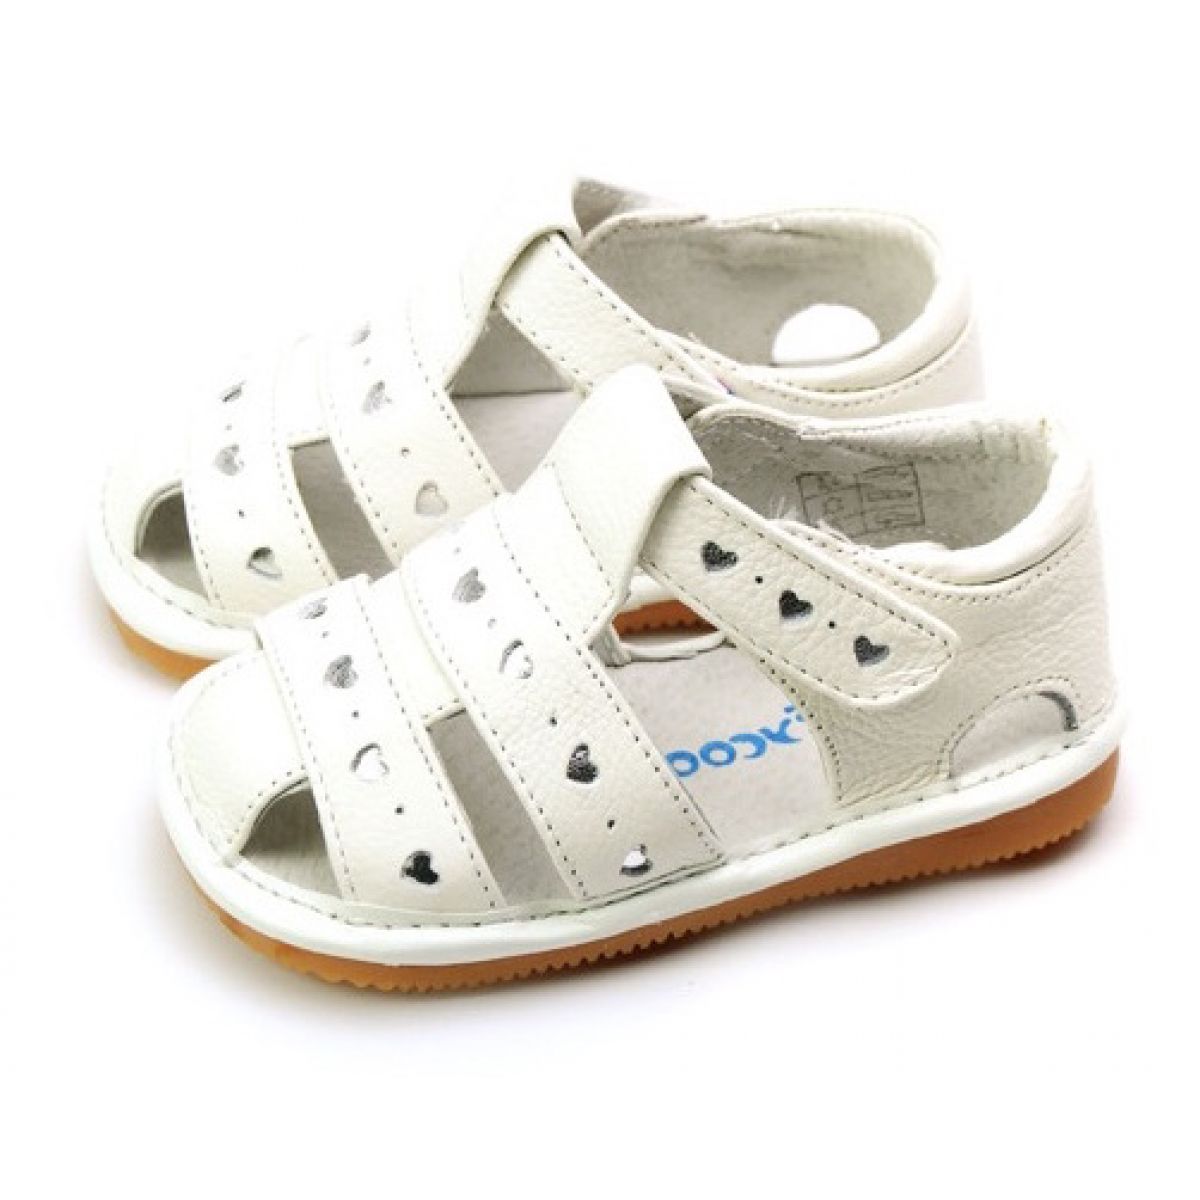 Cum poti alege cele mai frumoase sandale pentru fetita ta?